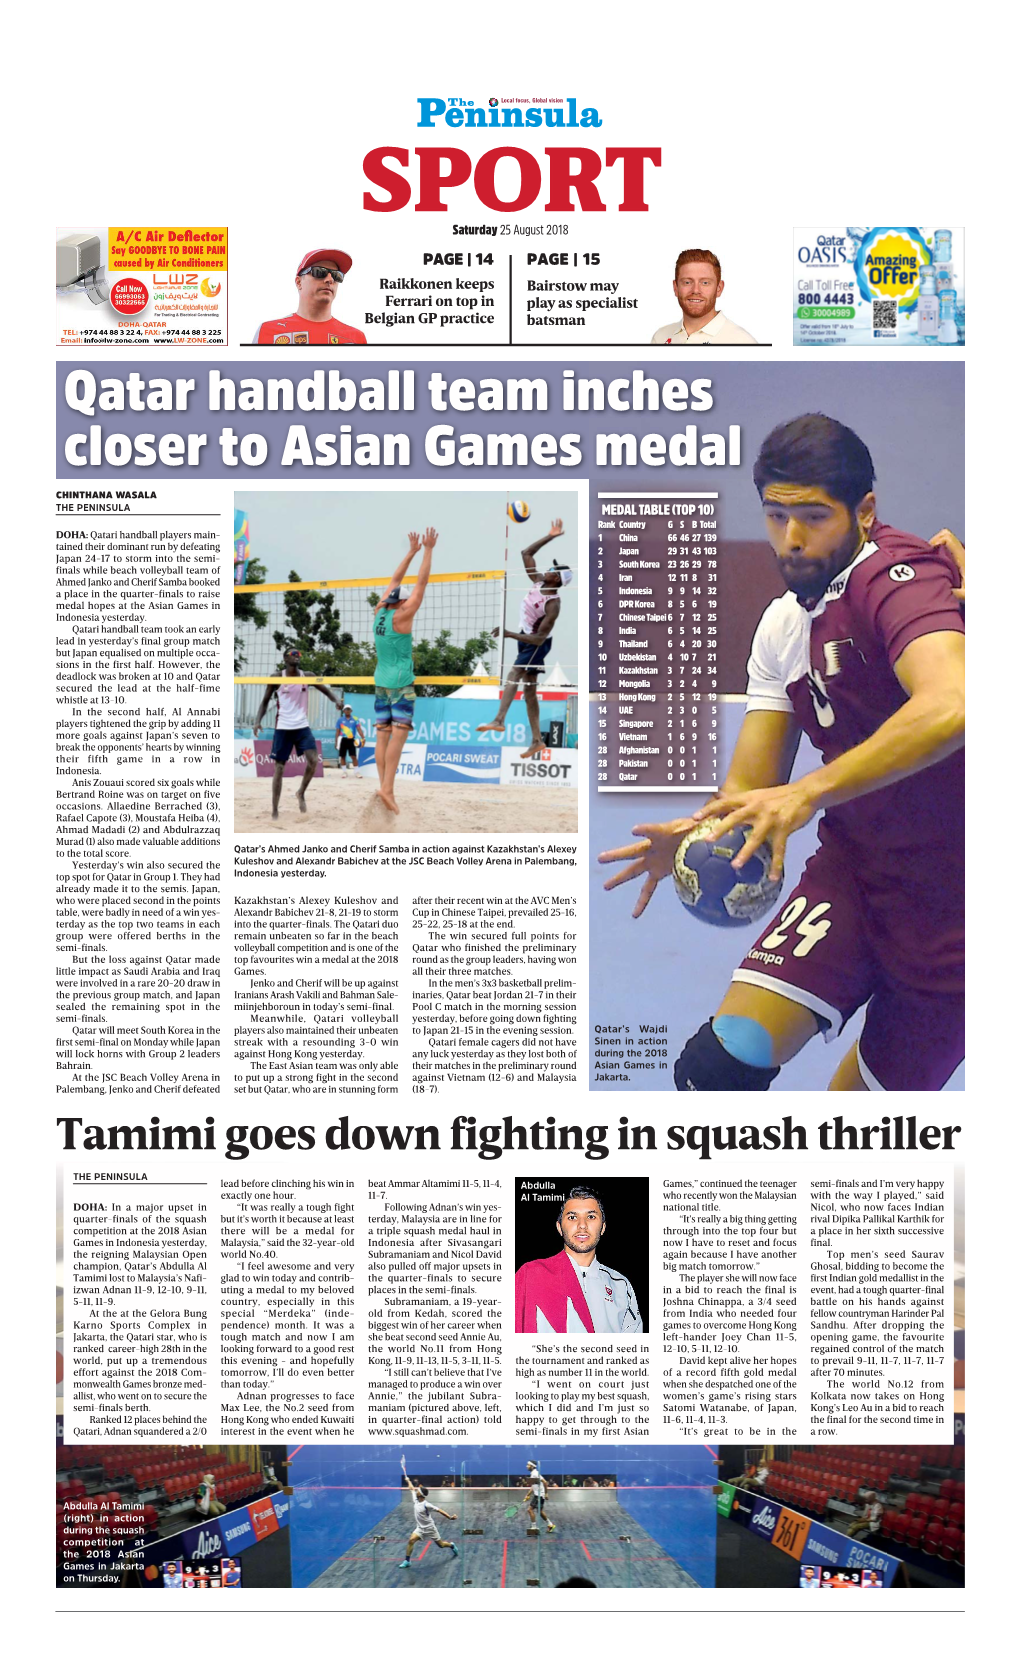 Qatar Handball Team Inches Closer to Asian Games Medal